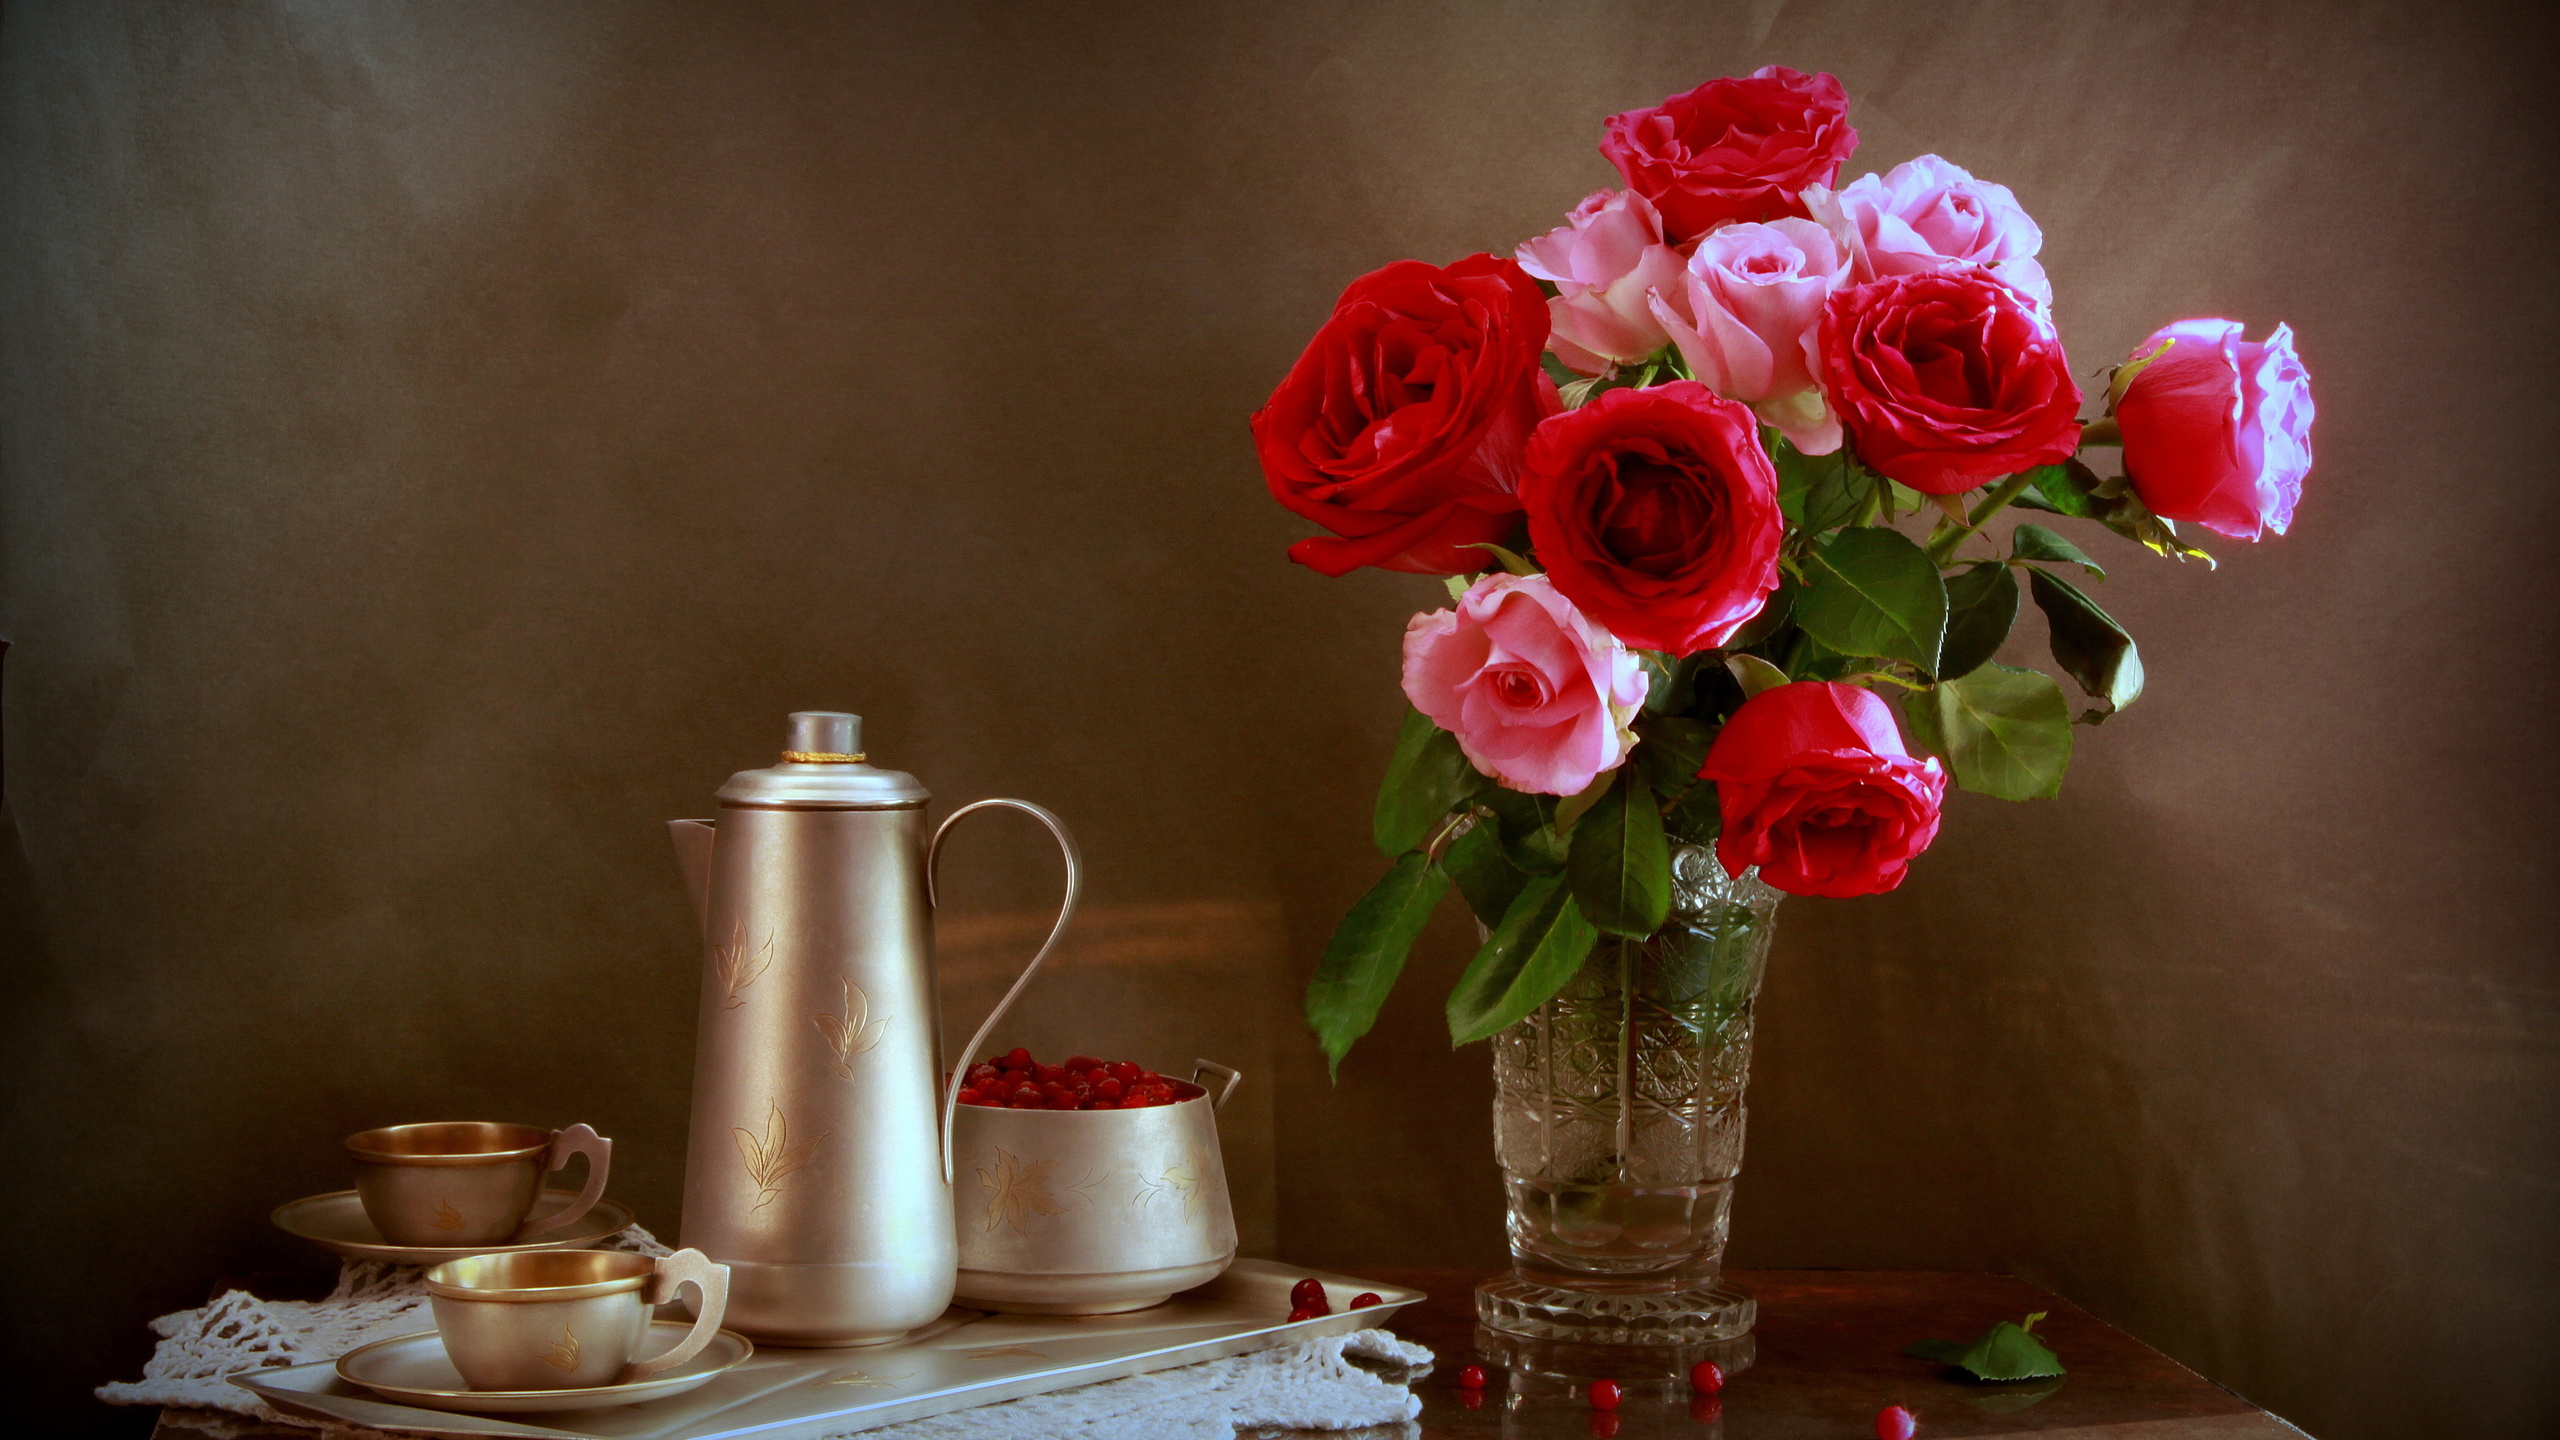 Пожелания доброго воскресного вечера. Натюрморт с розами. Вечерний натюрморт с цветами красивый. Душевного вечера. Красивые натюрморты с розами.